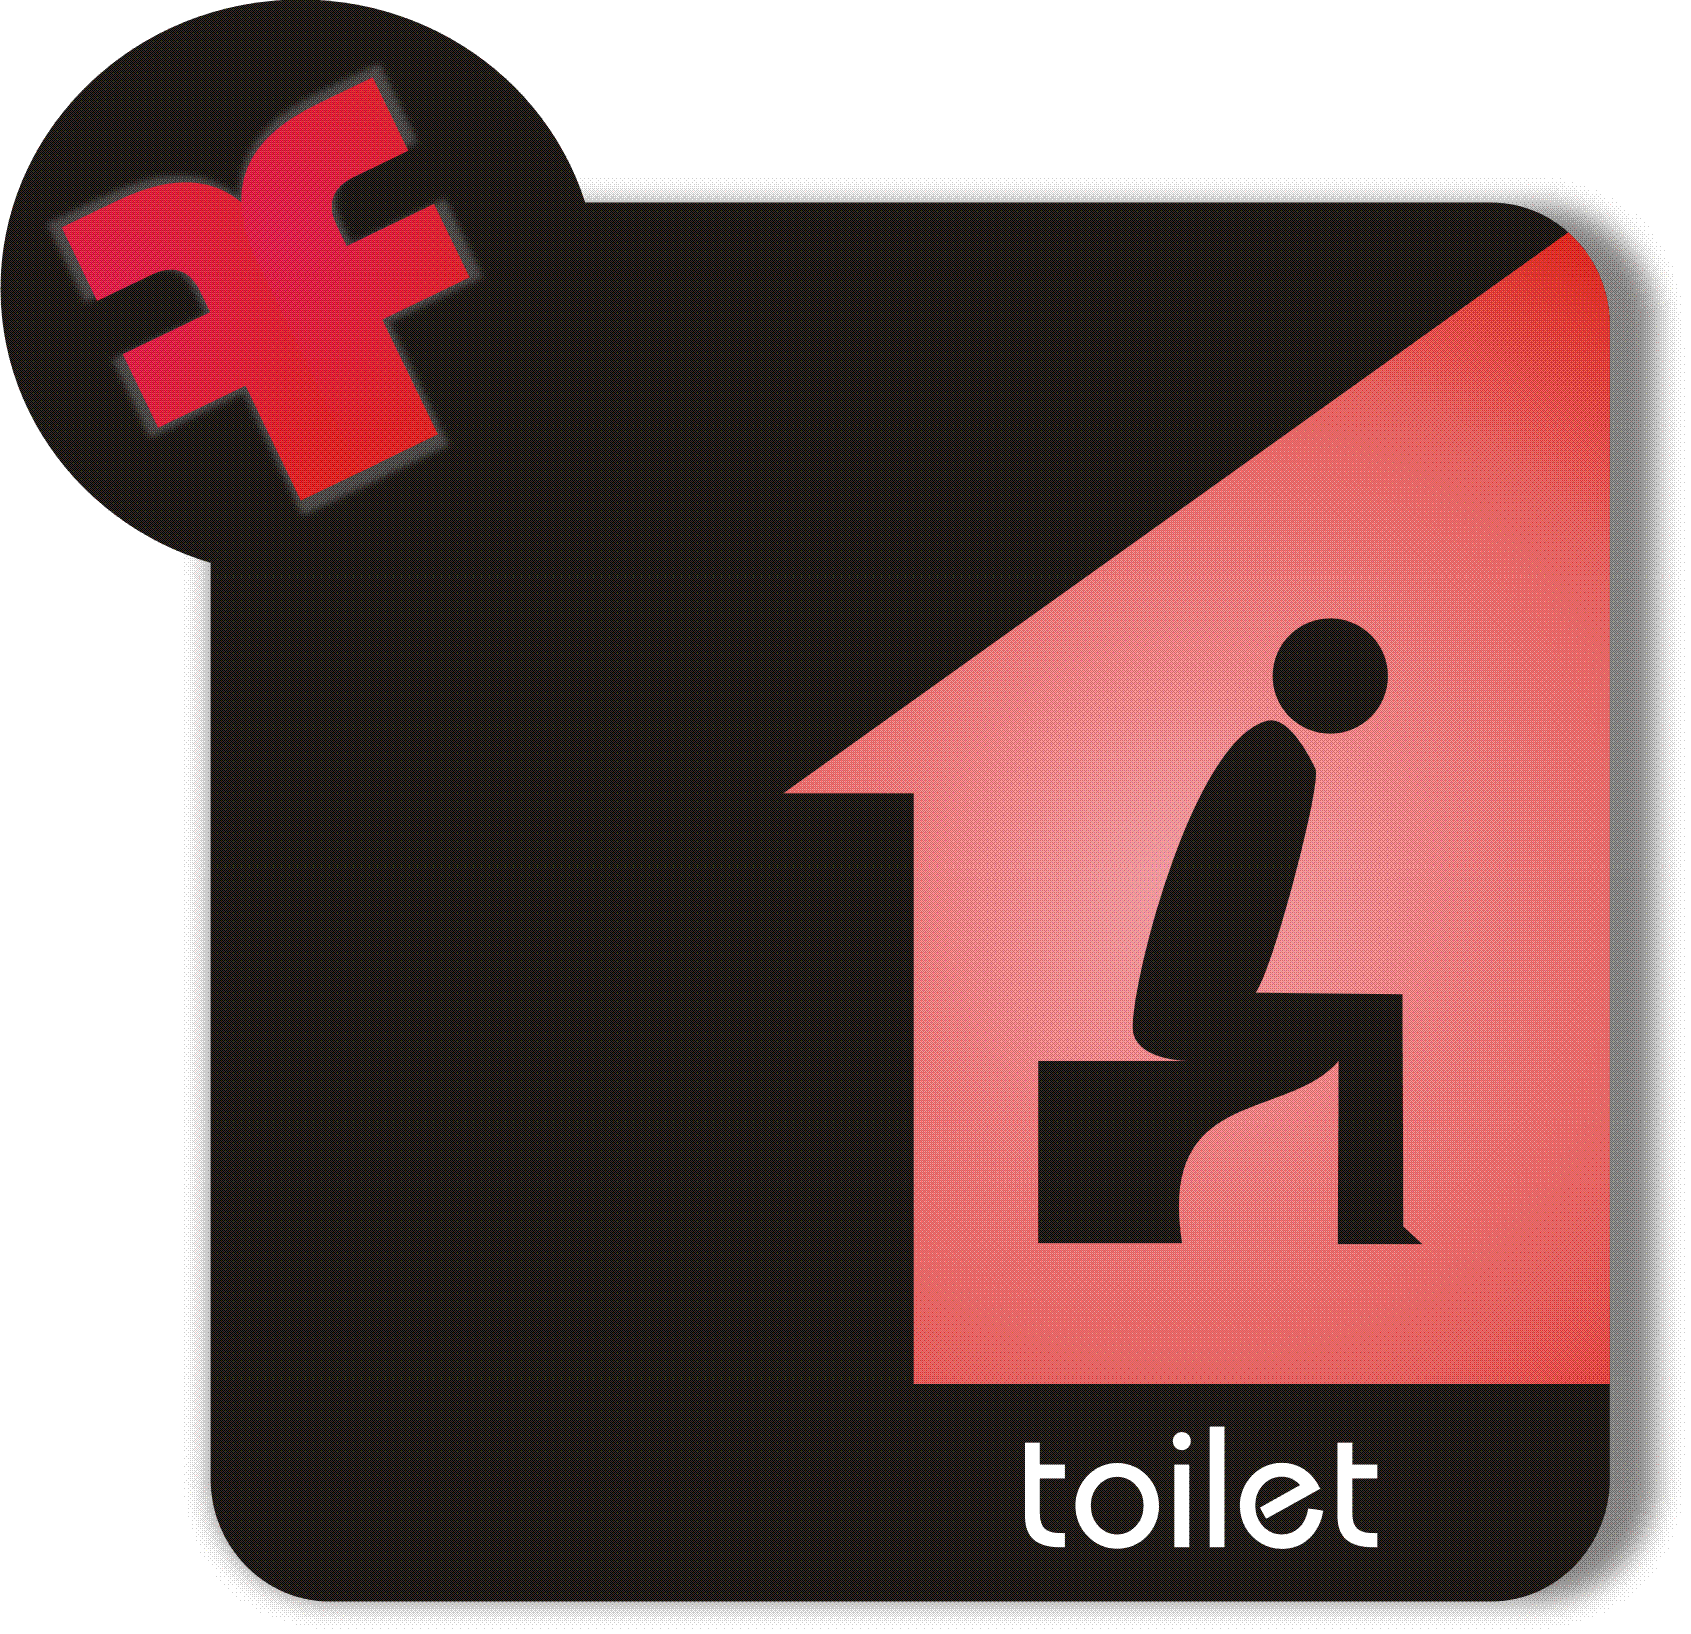 Toilet Laki  Laki  Free Images at Clker com vector clip 